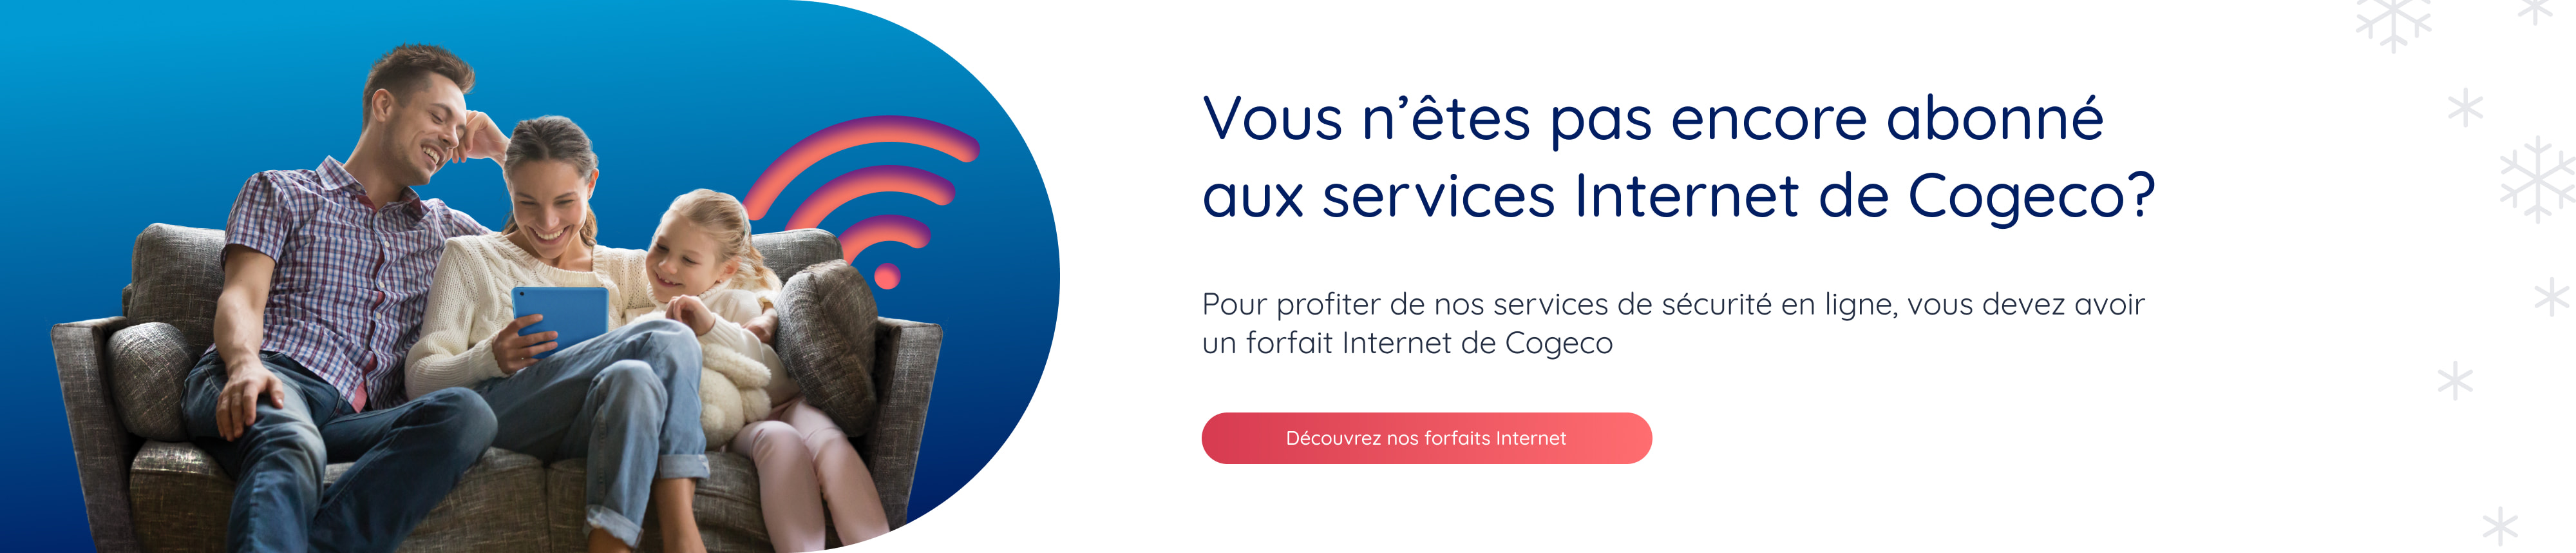 Vous n'êtes pas encore abonné aux services Internet de Cogeco? Pour profiter de nos services de sécurité en ligne, vous devez avoir un forfait Internet de Cogeco. Découvrez nos forfaits Internet